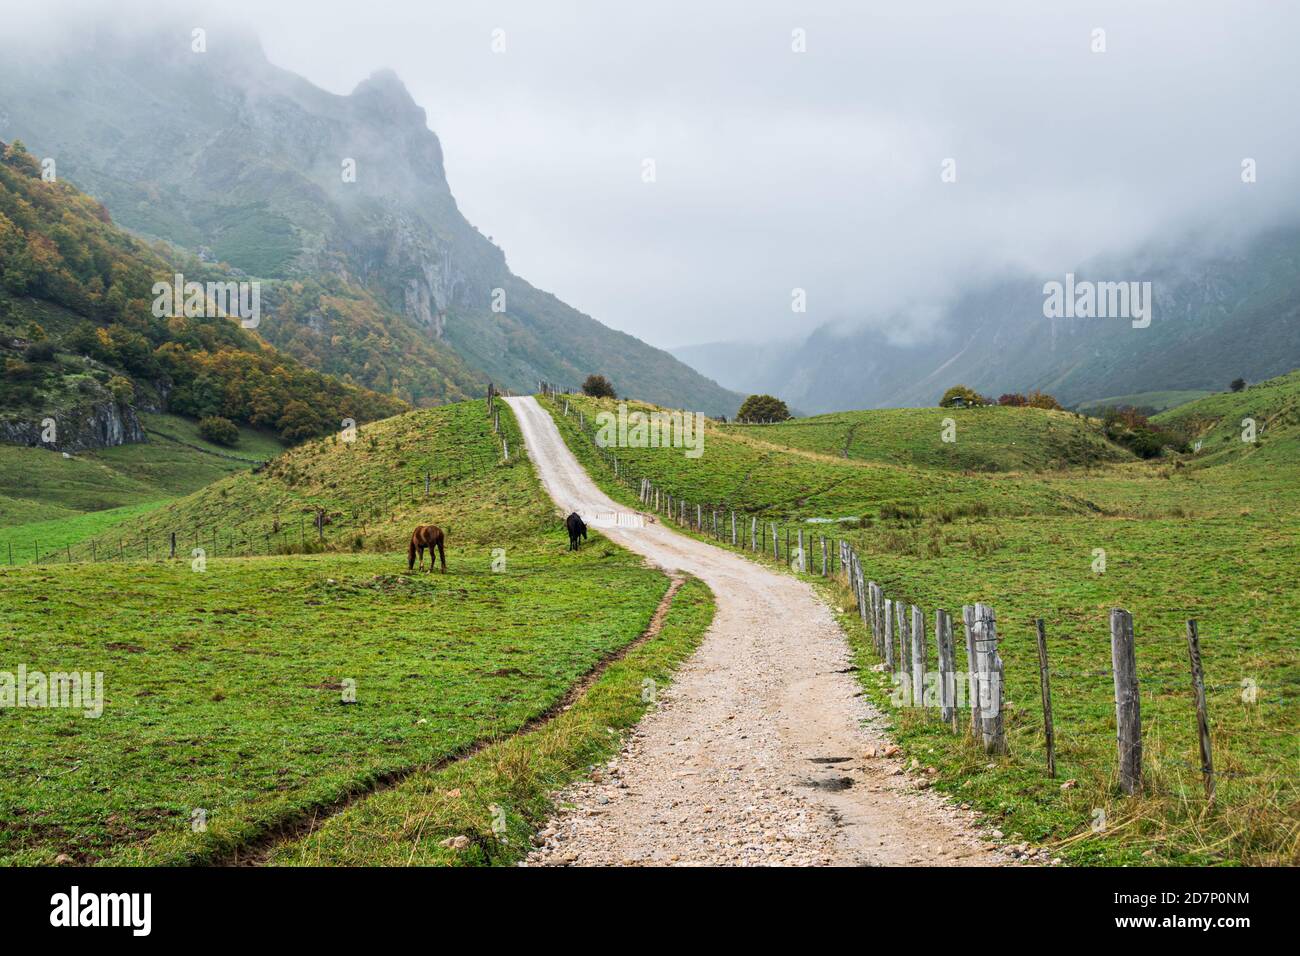 Pluie automnale dans le parc national de Somiedo dans les Asturies, Espagne. Paysage de montagne pittoresque du nord de l'Espagne. Banque D'Images